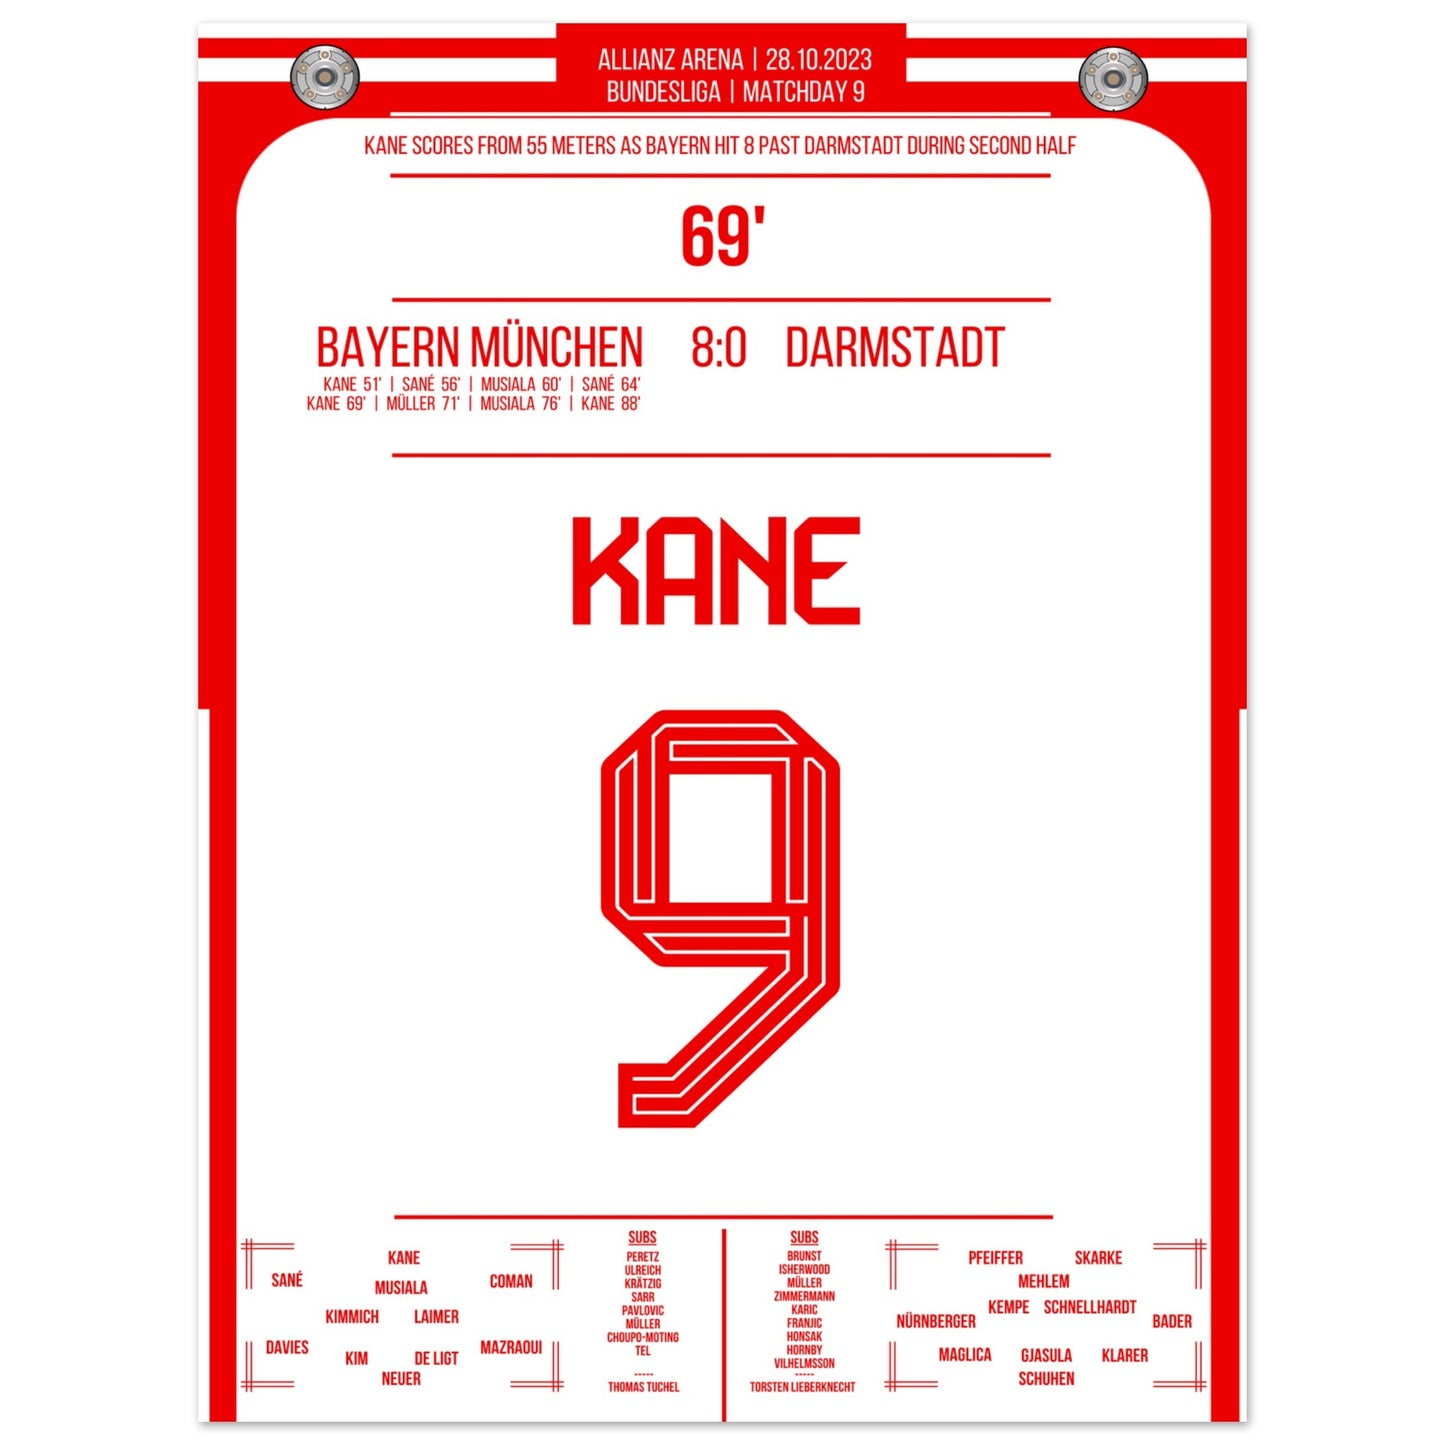 Kane's Traumtor aus 55 Metern bei 8-0 Sieg gegen Darmstadt